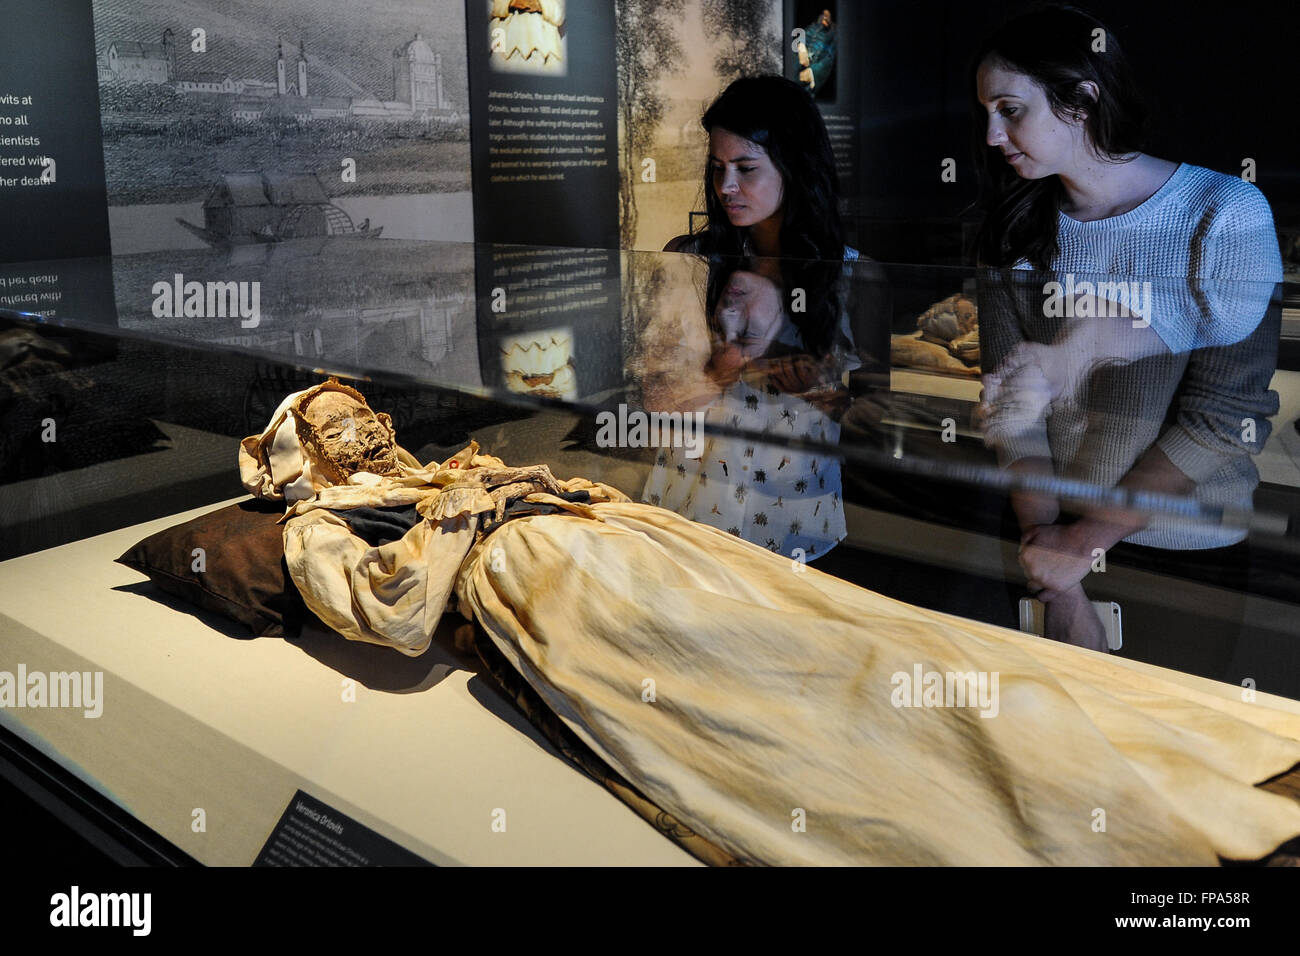 Los Angeles, California, EEUU. El 17 de marzo, 2016. Foto tomada el 17 de marzo de 2016 muestra una momia femenina muestra durante la previsualización de la 'Mummies del mundo: la exposición", celebrado en el Bowers Museum, California, Estados Unidos. La exposición, que cuenta con más de 150 artefactos, verdaderas momias humanas y animales de todo el mundo, dará el pistoletazo de salida el 18 de marzo. © Zhang Chaoqun/Xinhua/Alamy Live News Foto de stock